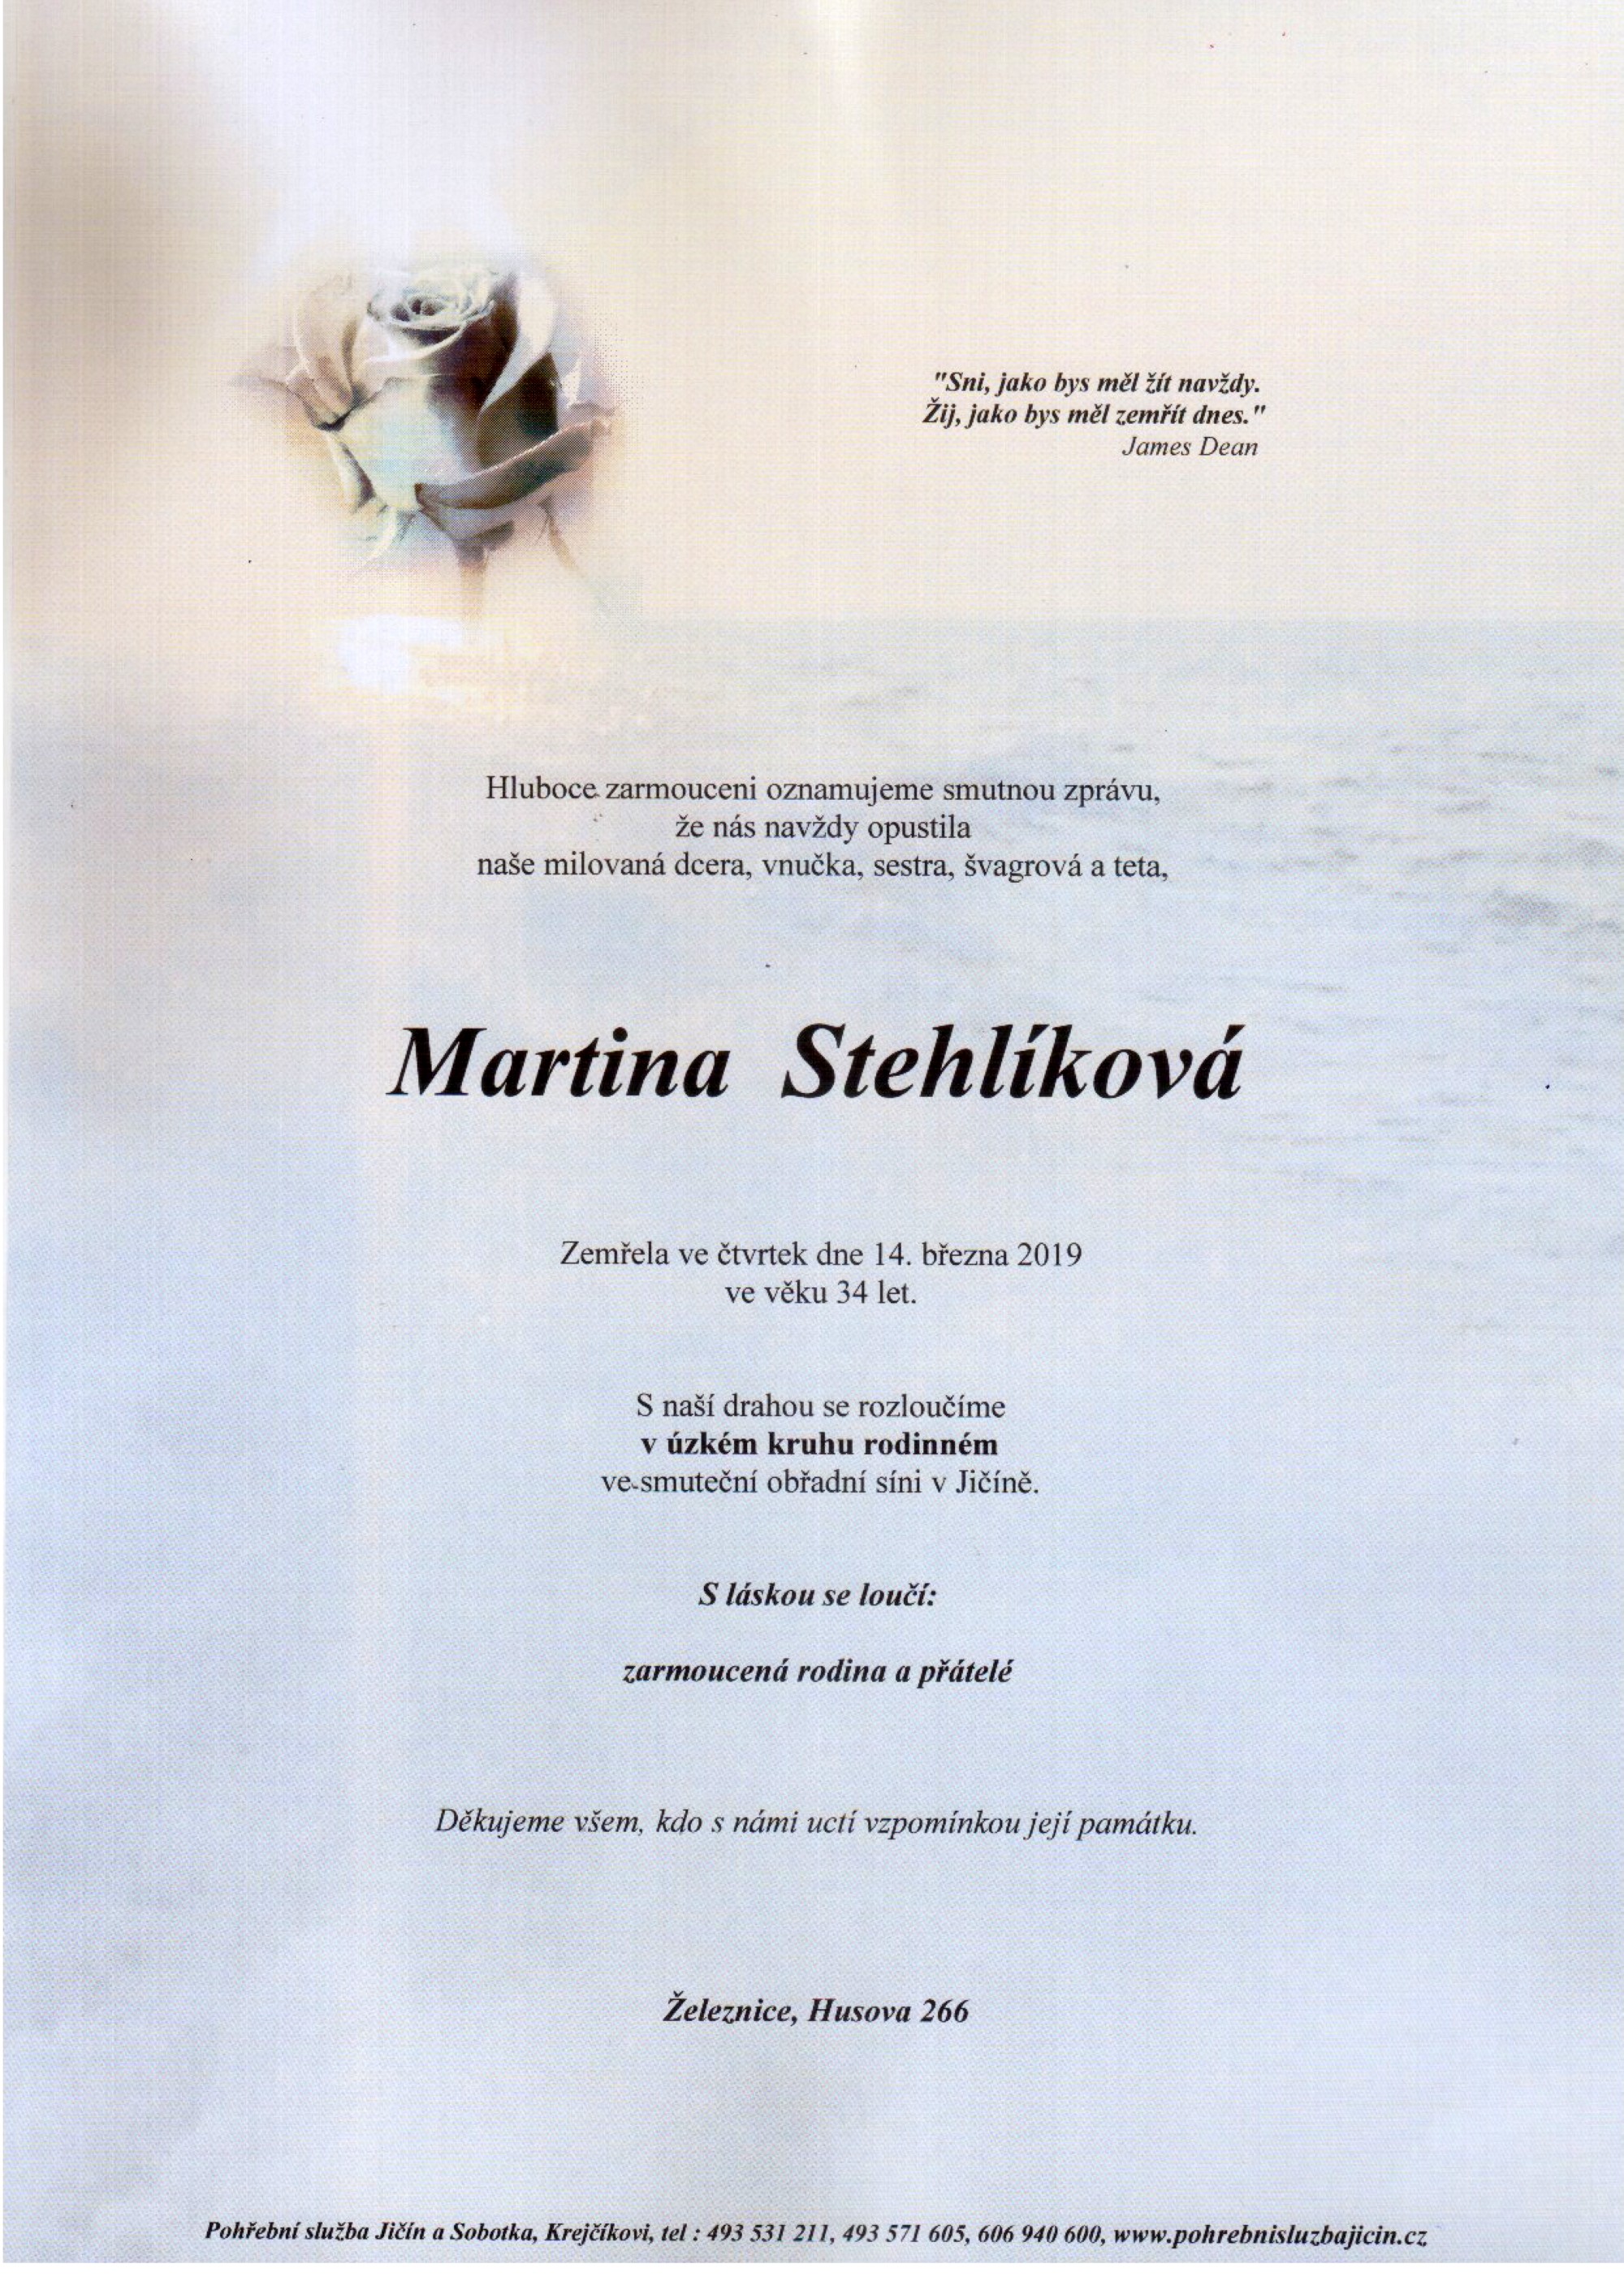 Martina Stehlíková